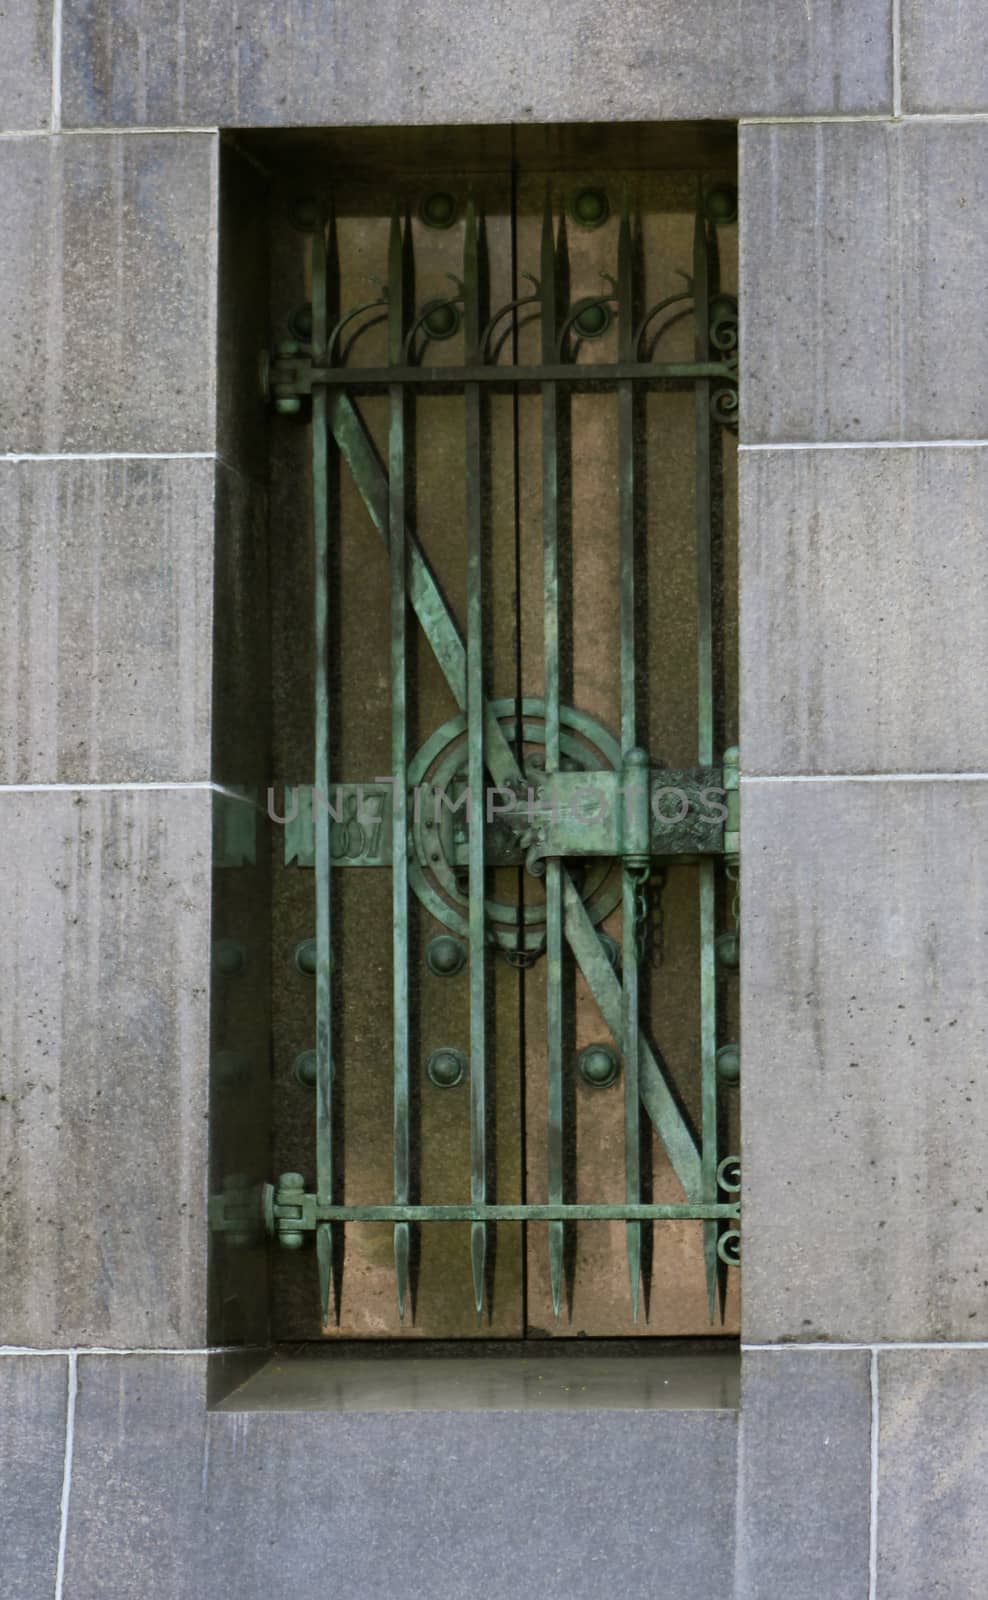 Green Mausoleum Window by mpk1970